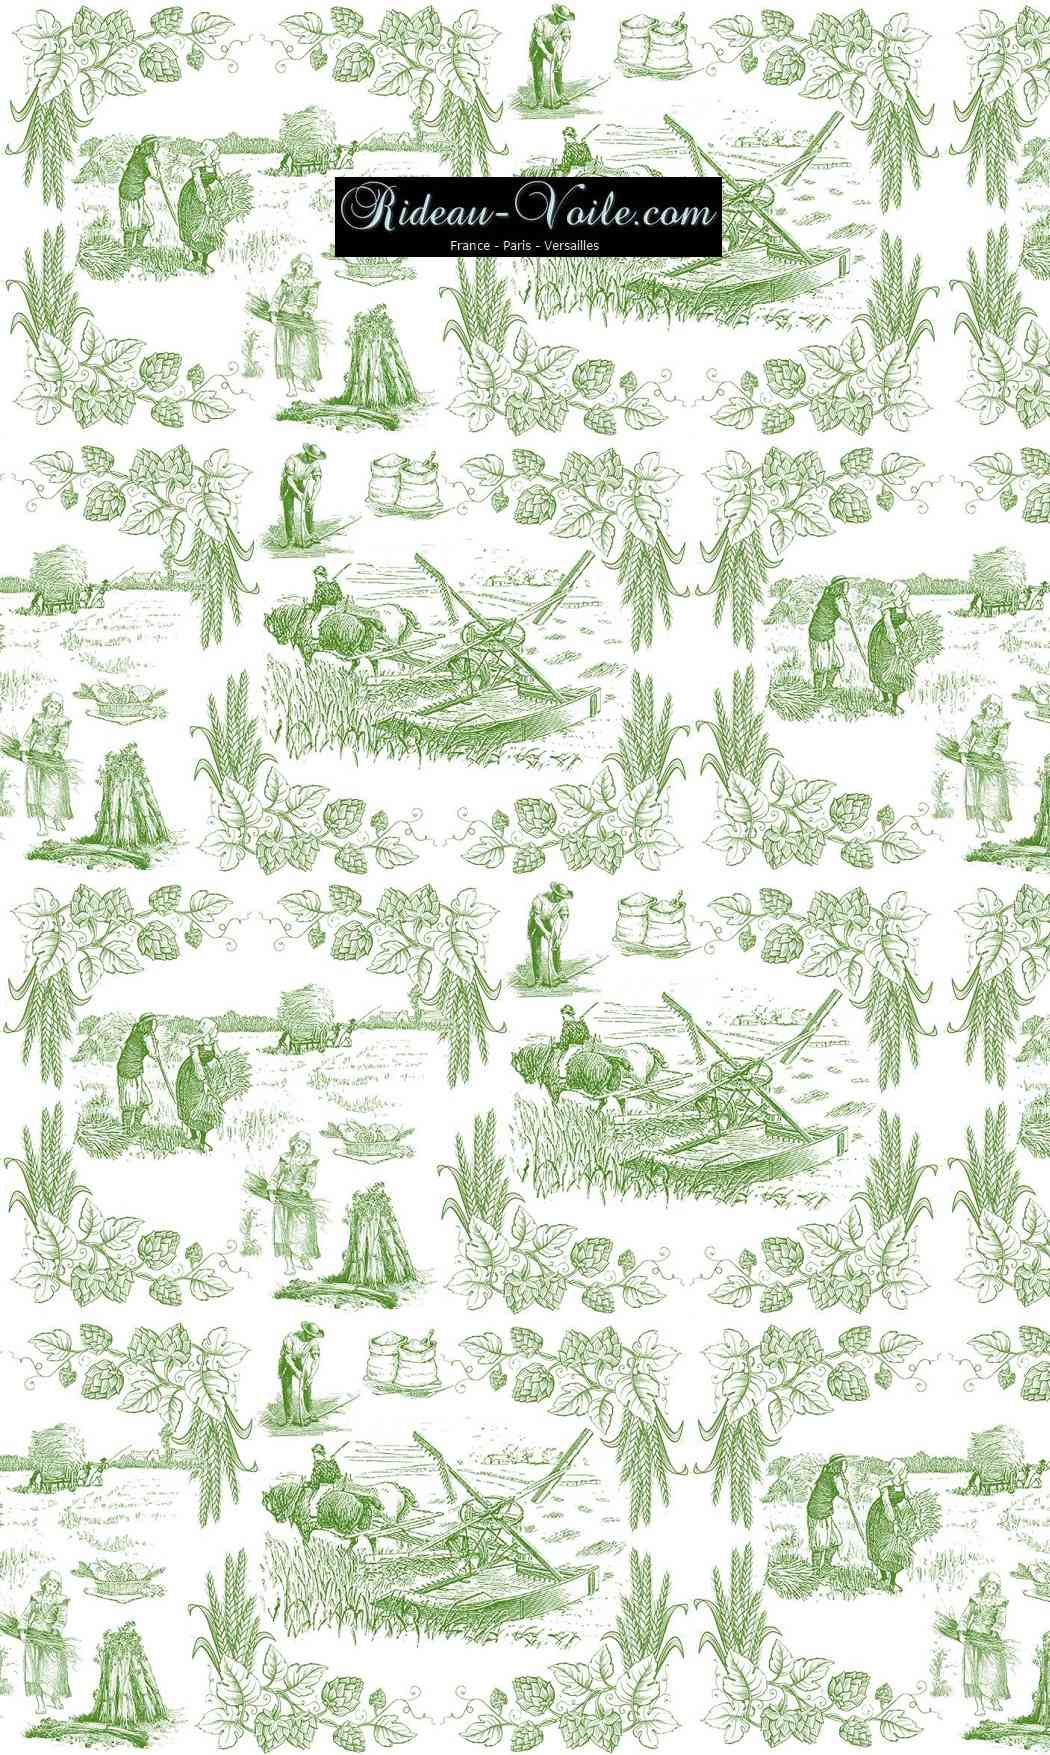 Toile de Jouy tissu au mètre ameublement textile Paris Versailles Yvelines decoration french pattern haut gamme vert pastoral